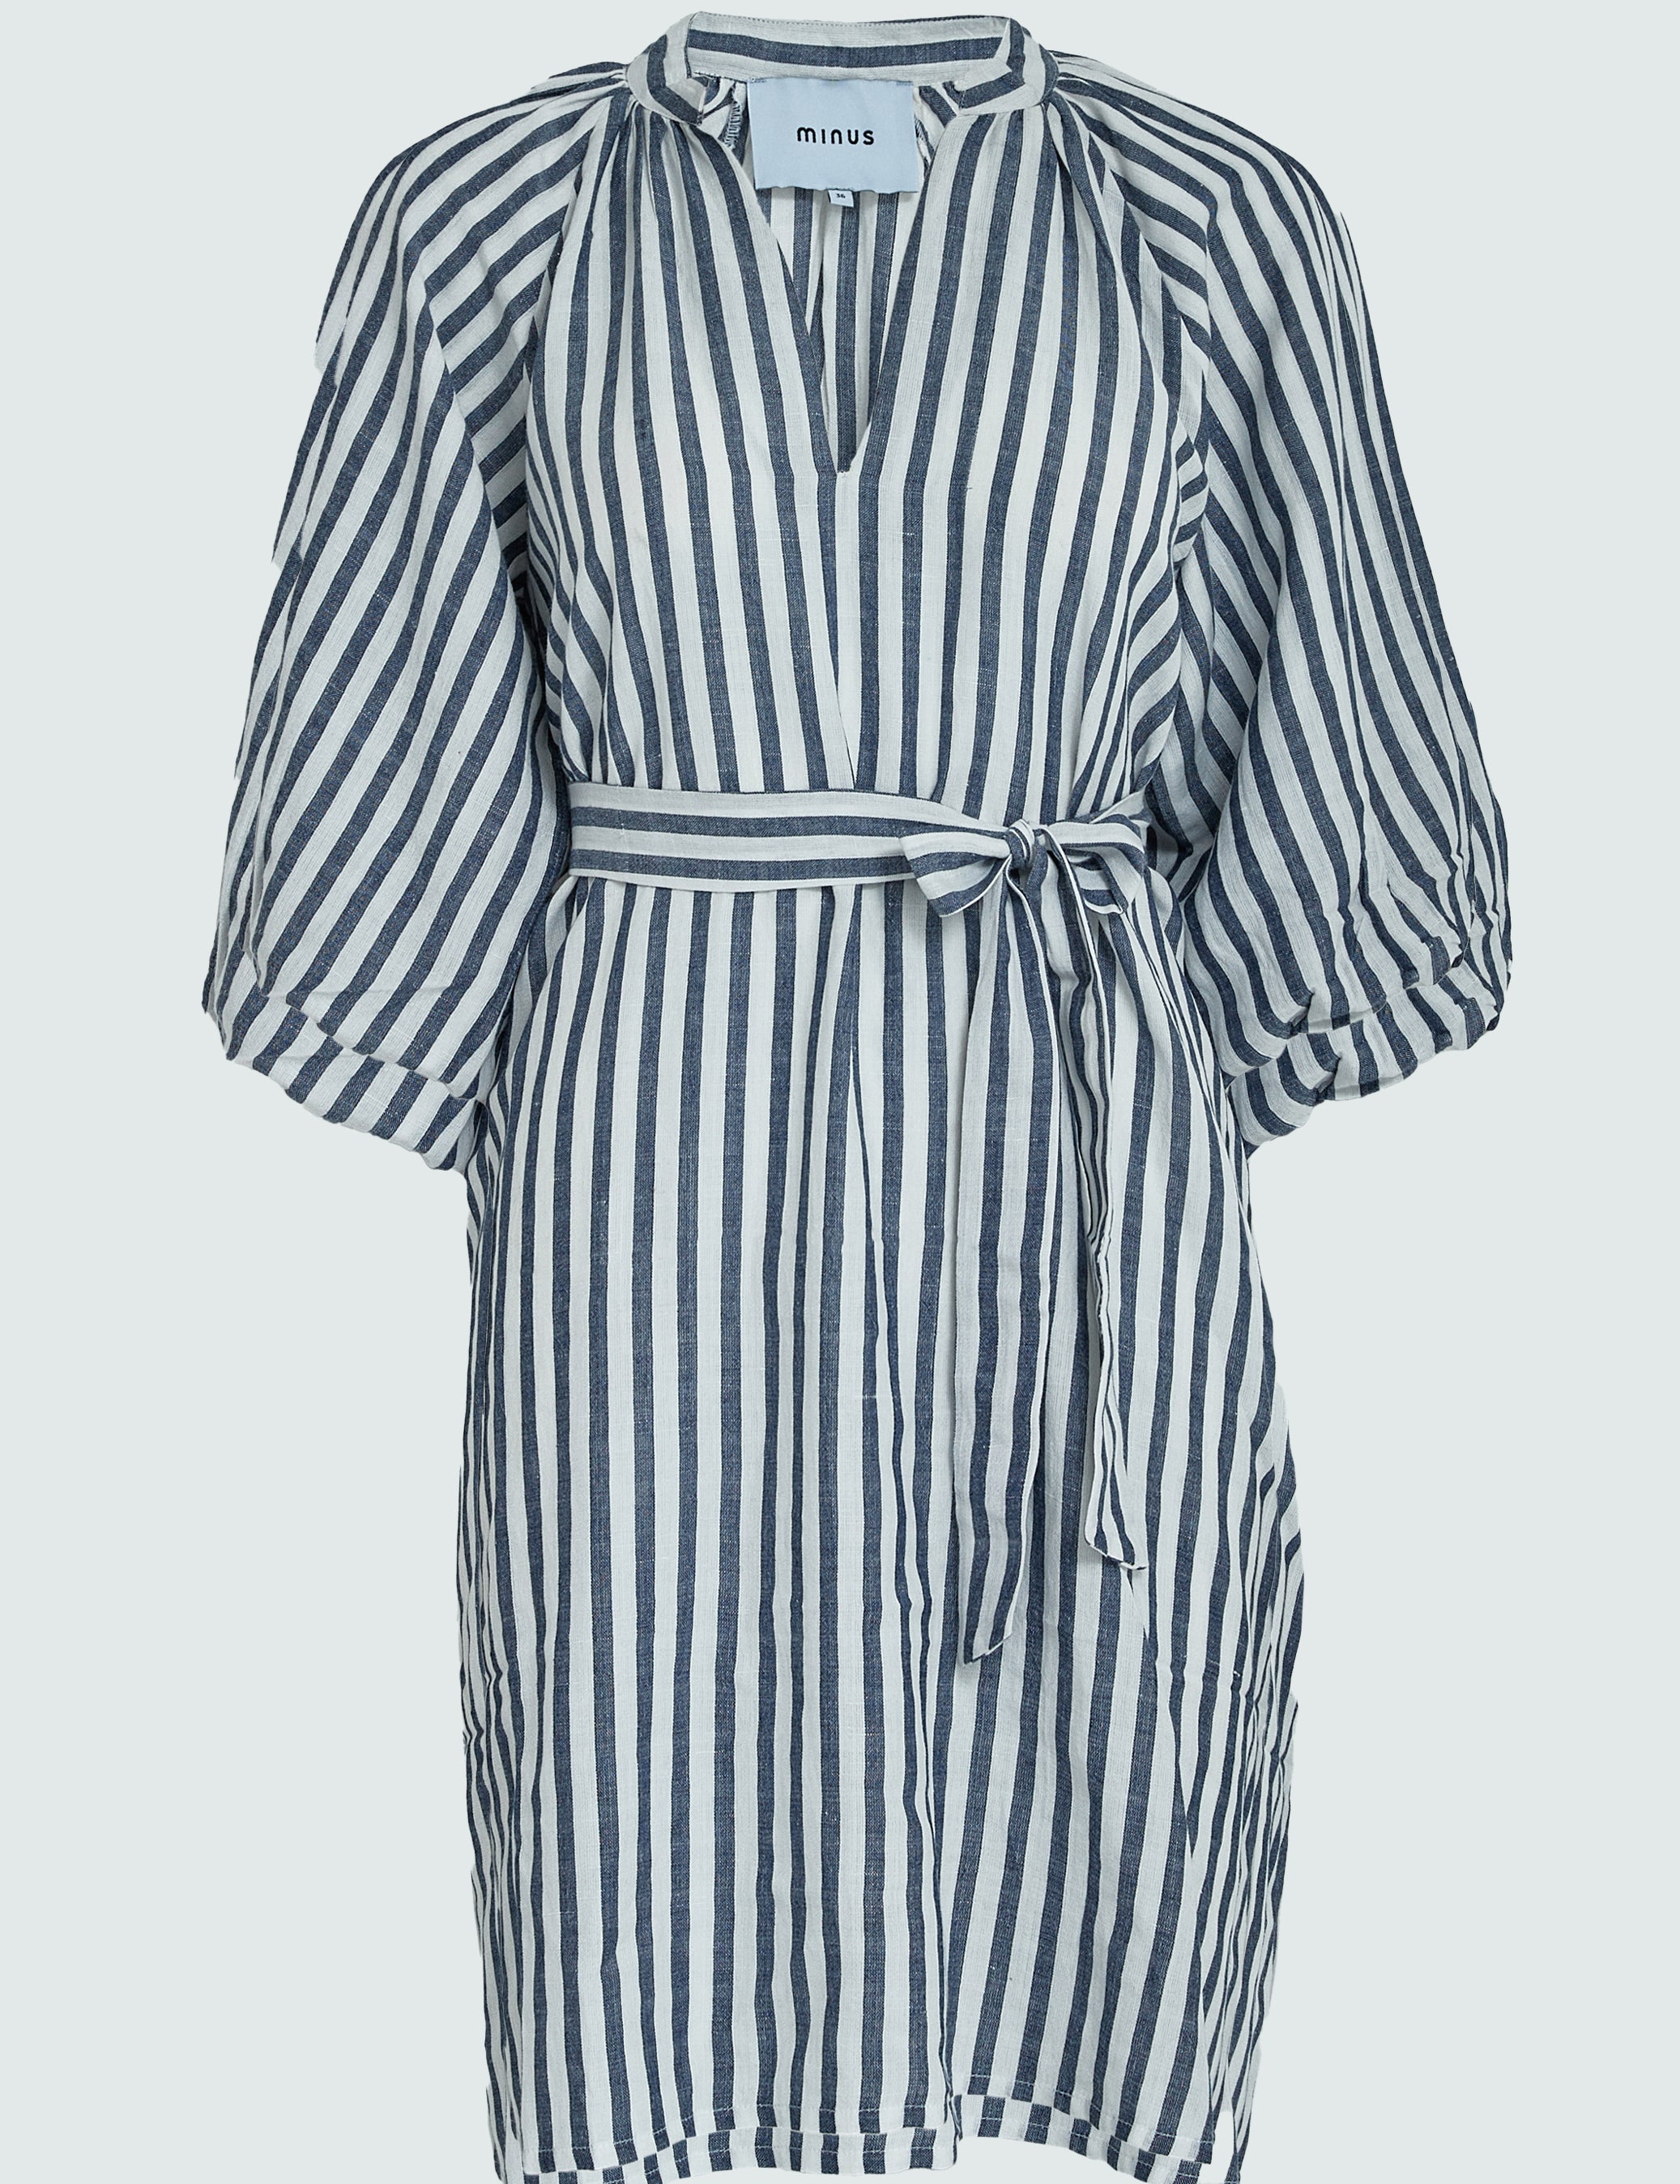 Minus MSFarika Short Dress Dress 537S Dark Denim Stripe